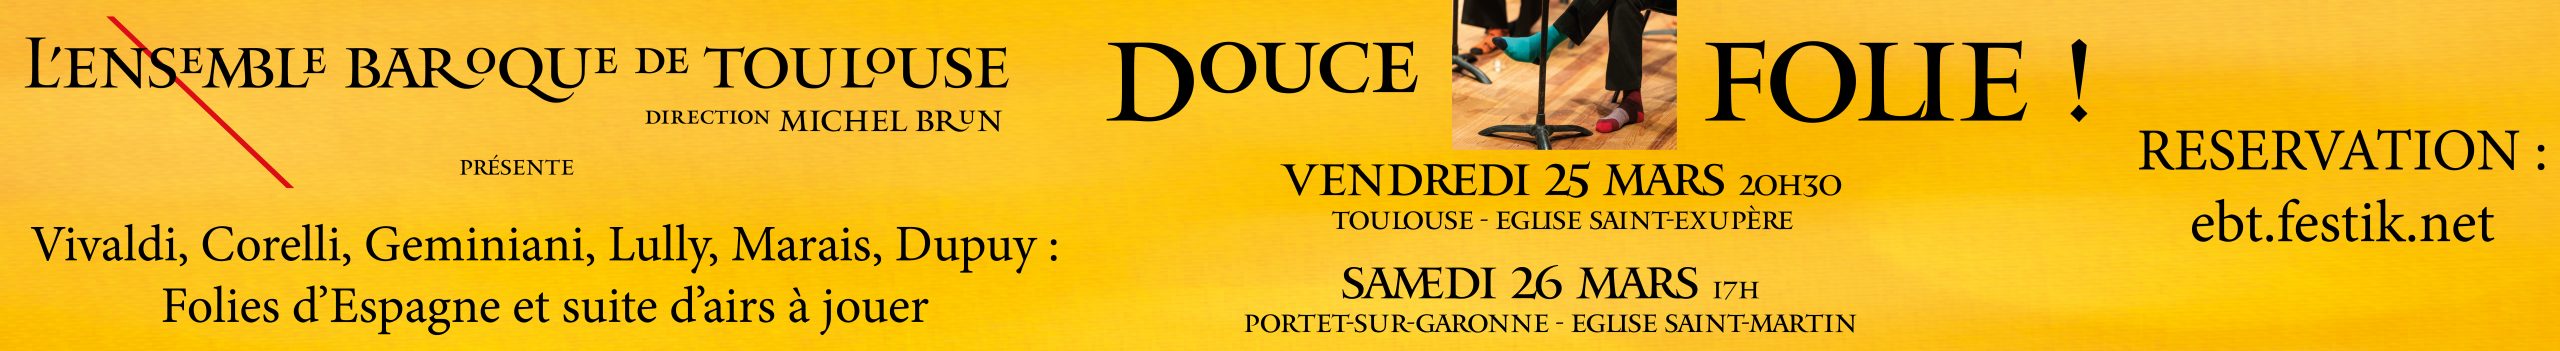 Ensemble Baroque De Toulouse Douce Folie Site